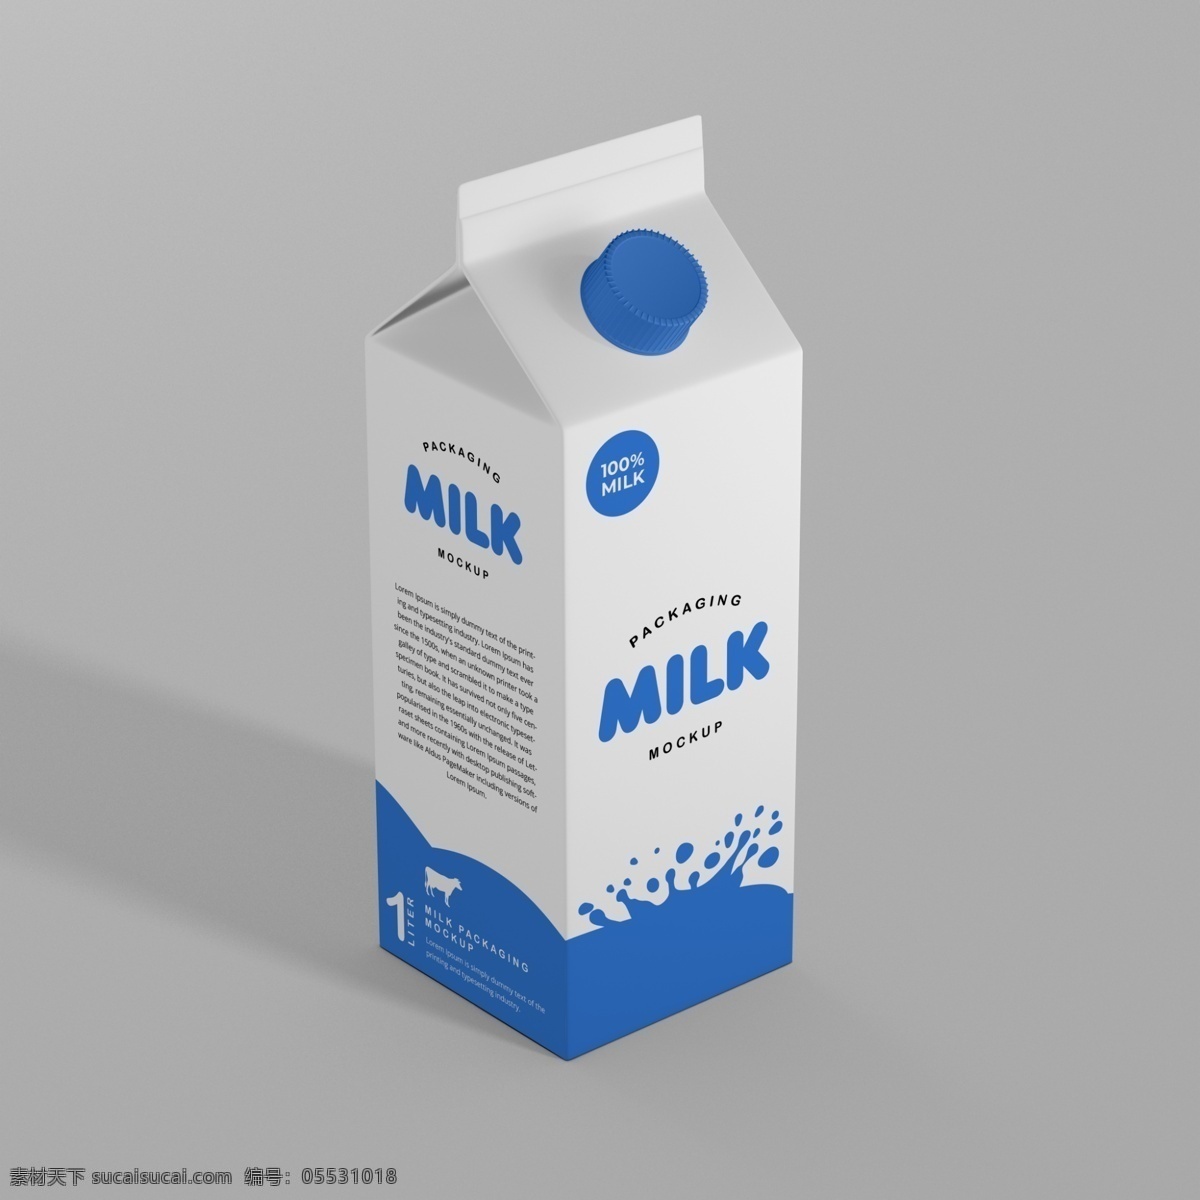 牛奶 包装盒 样机 牛奶包装盒 包装盒样机 包装效果图 牛奶包装样机 牛奶包装效果 牛奶包装贴图 饮料包装样机 饮品样机 饮料包装效果 样机效果贴图 包装设计